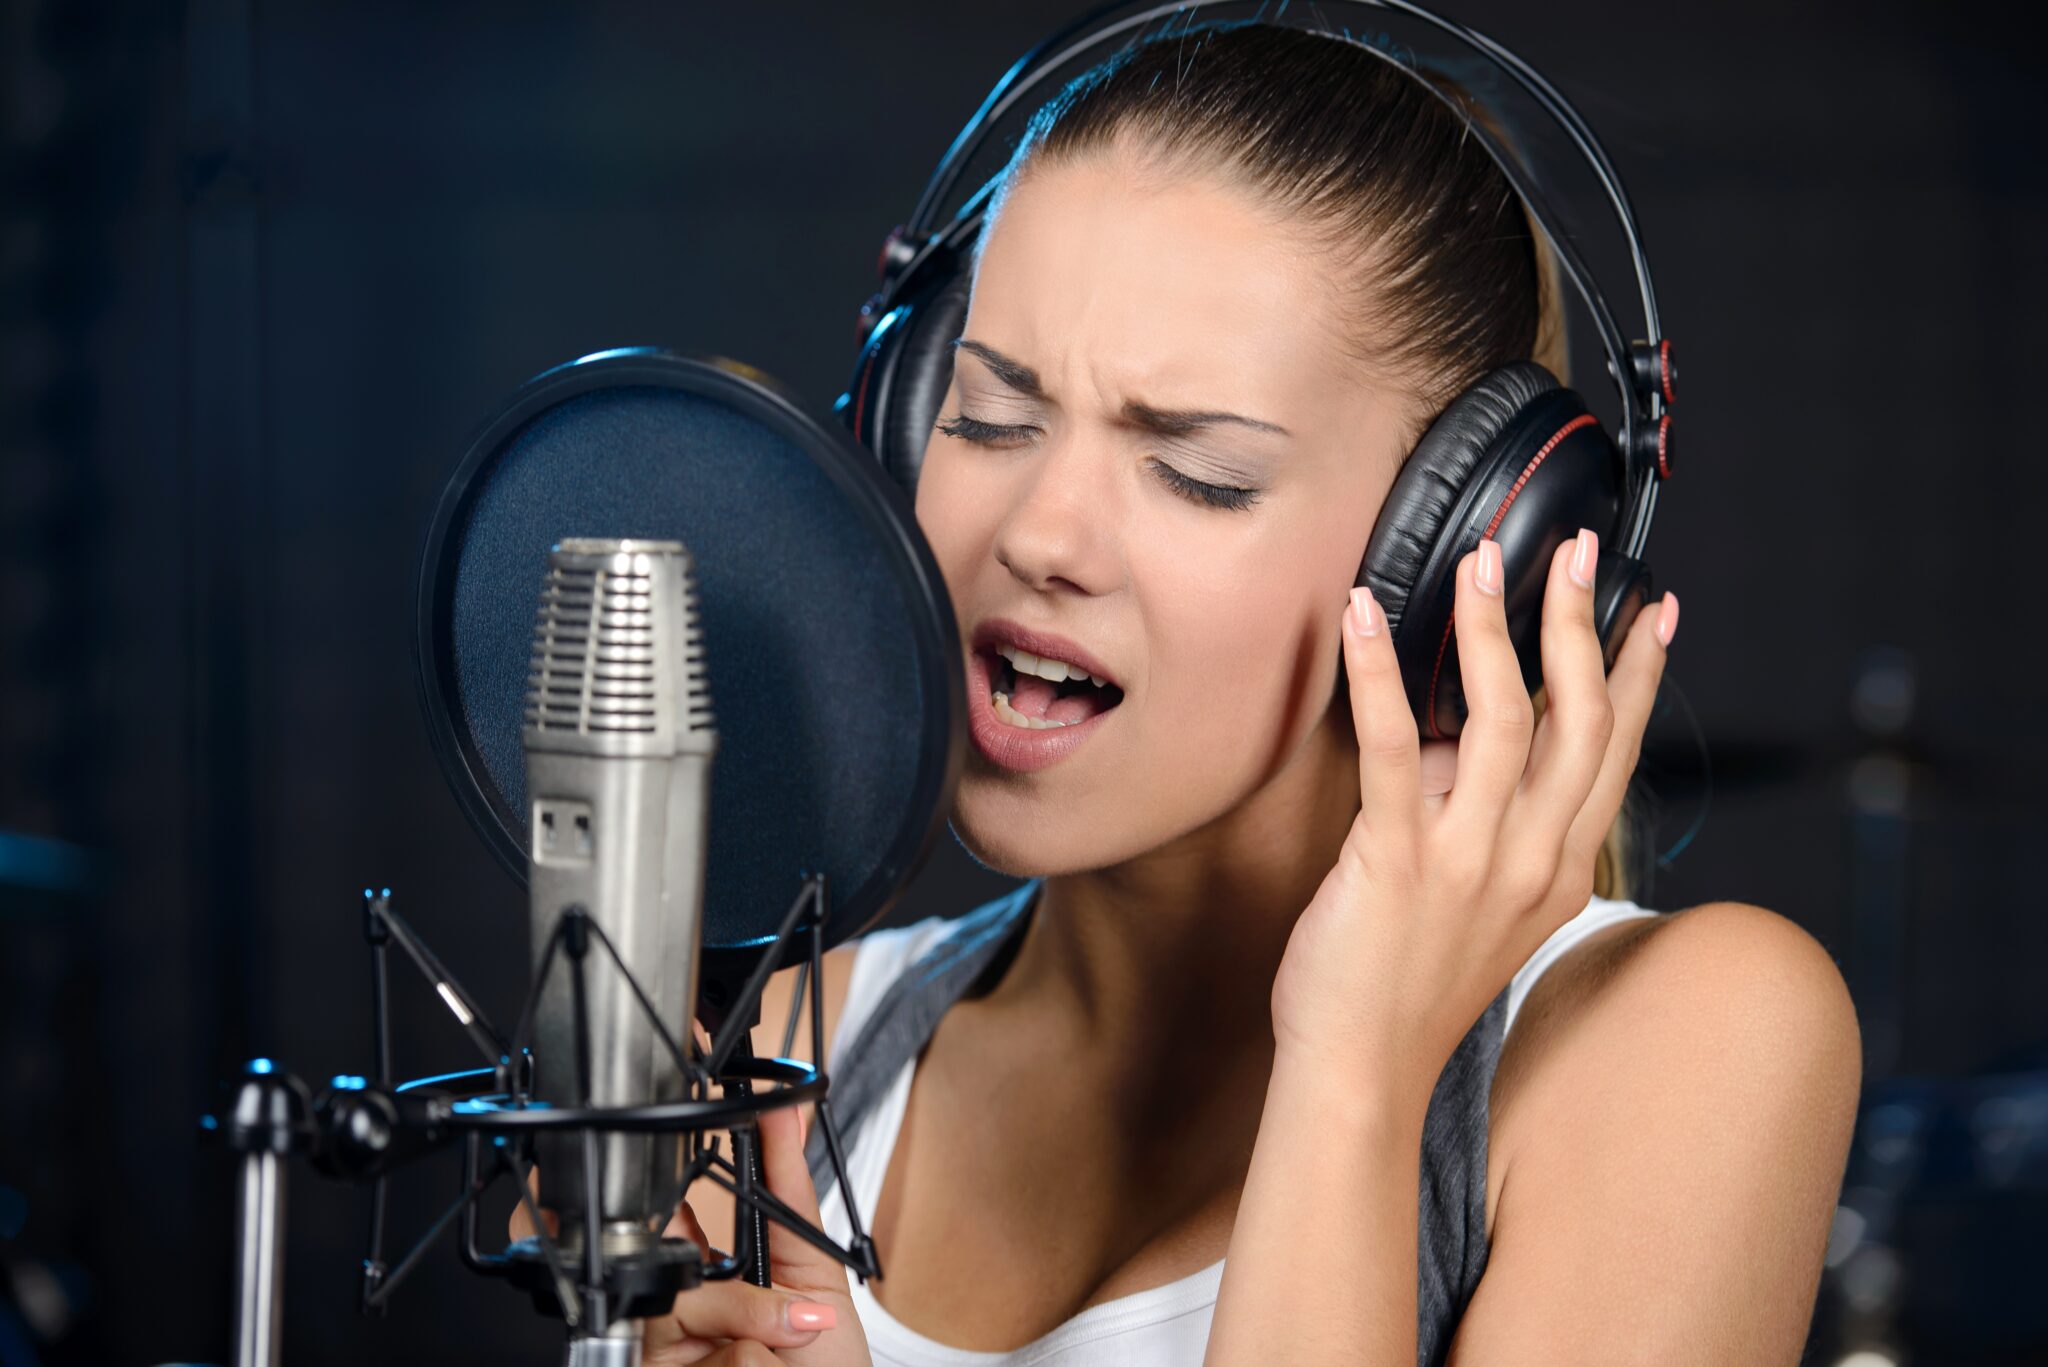 Профессиональные вокальные занятия: открытие вашего голоса и достижение ваших музыкальных целей